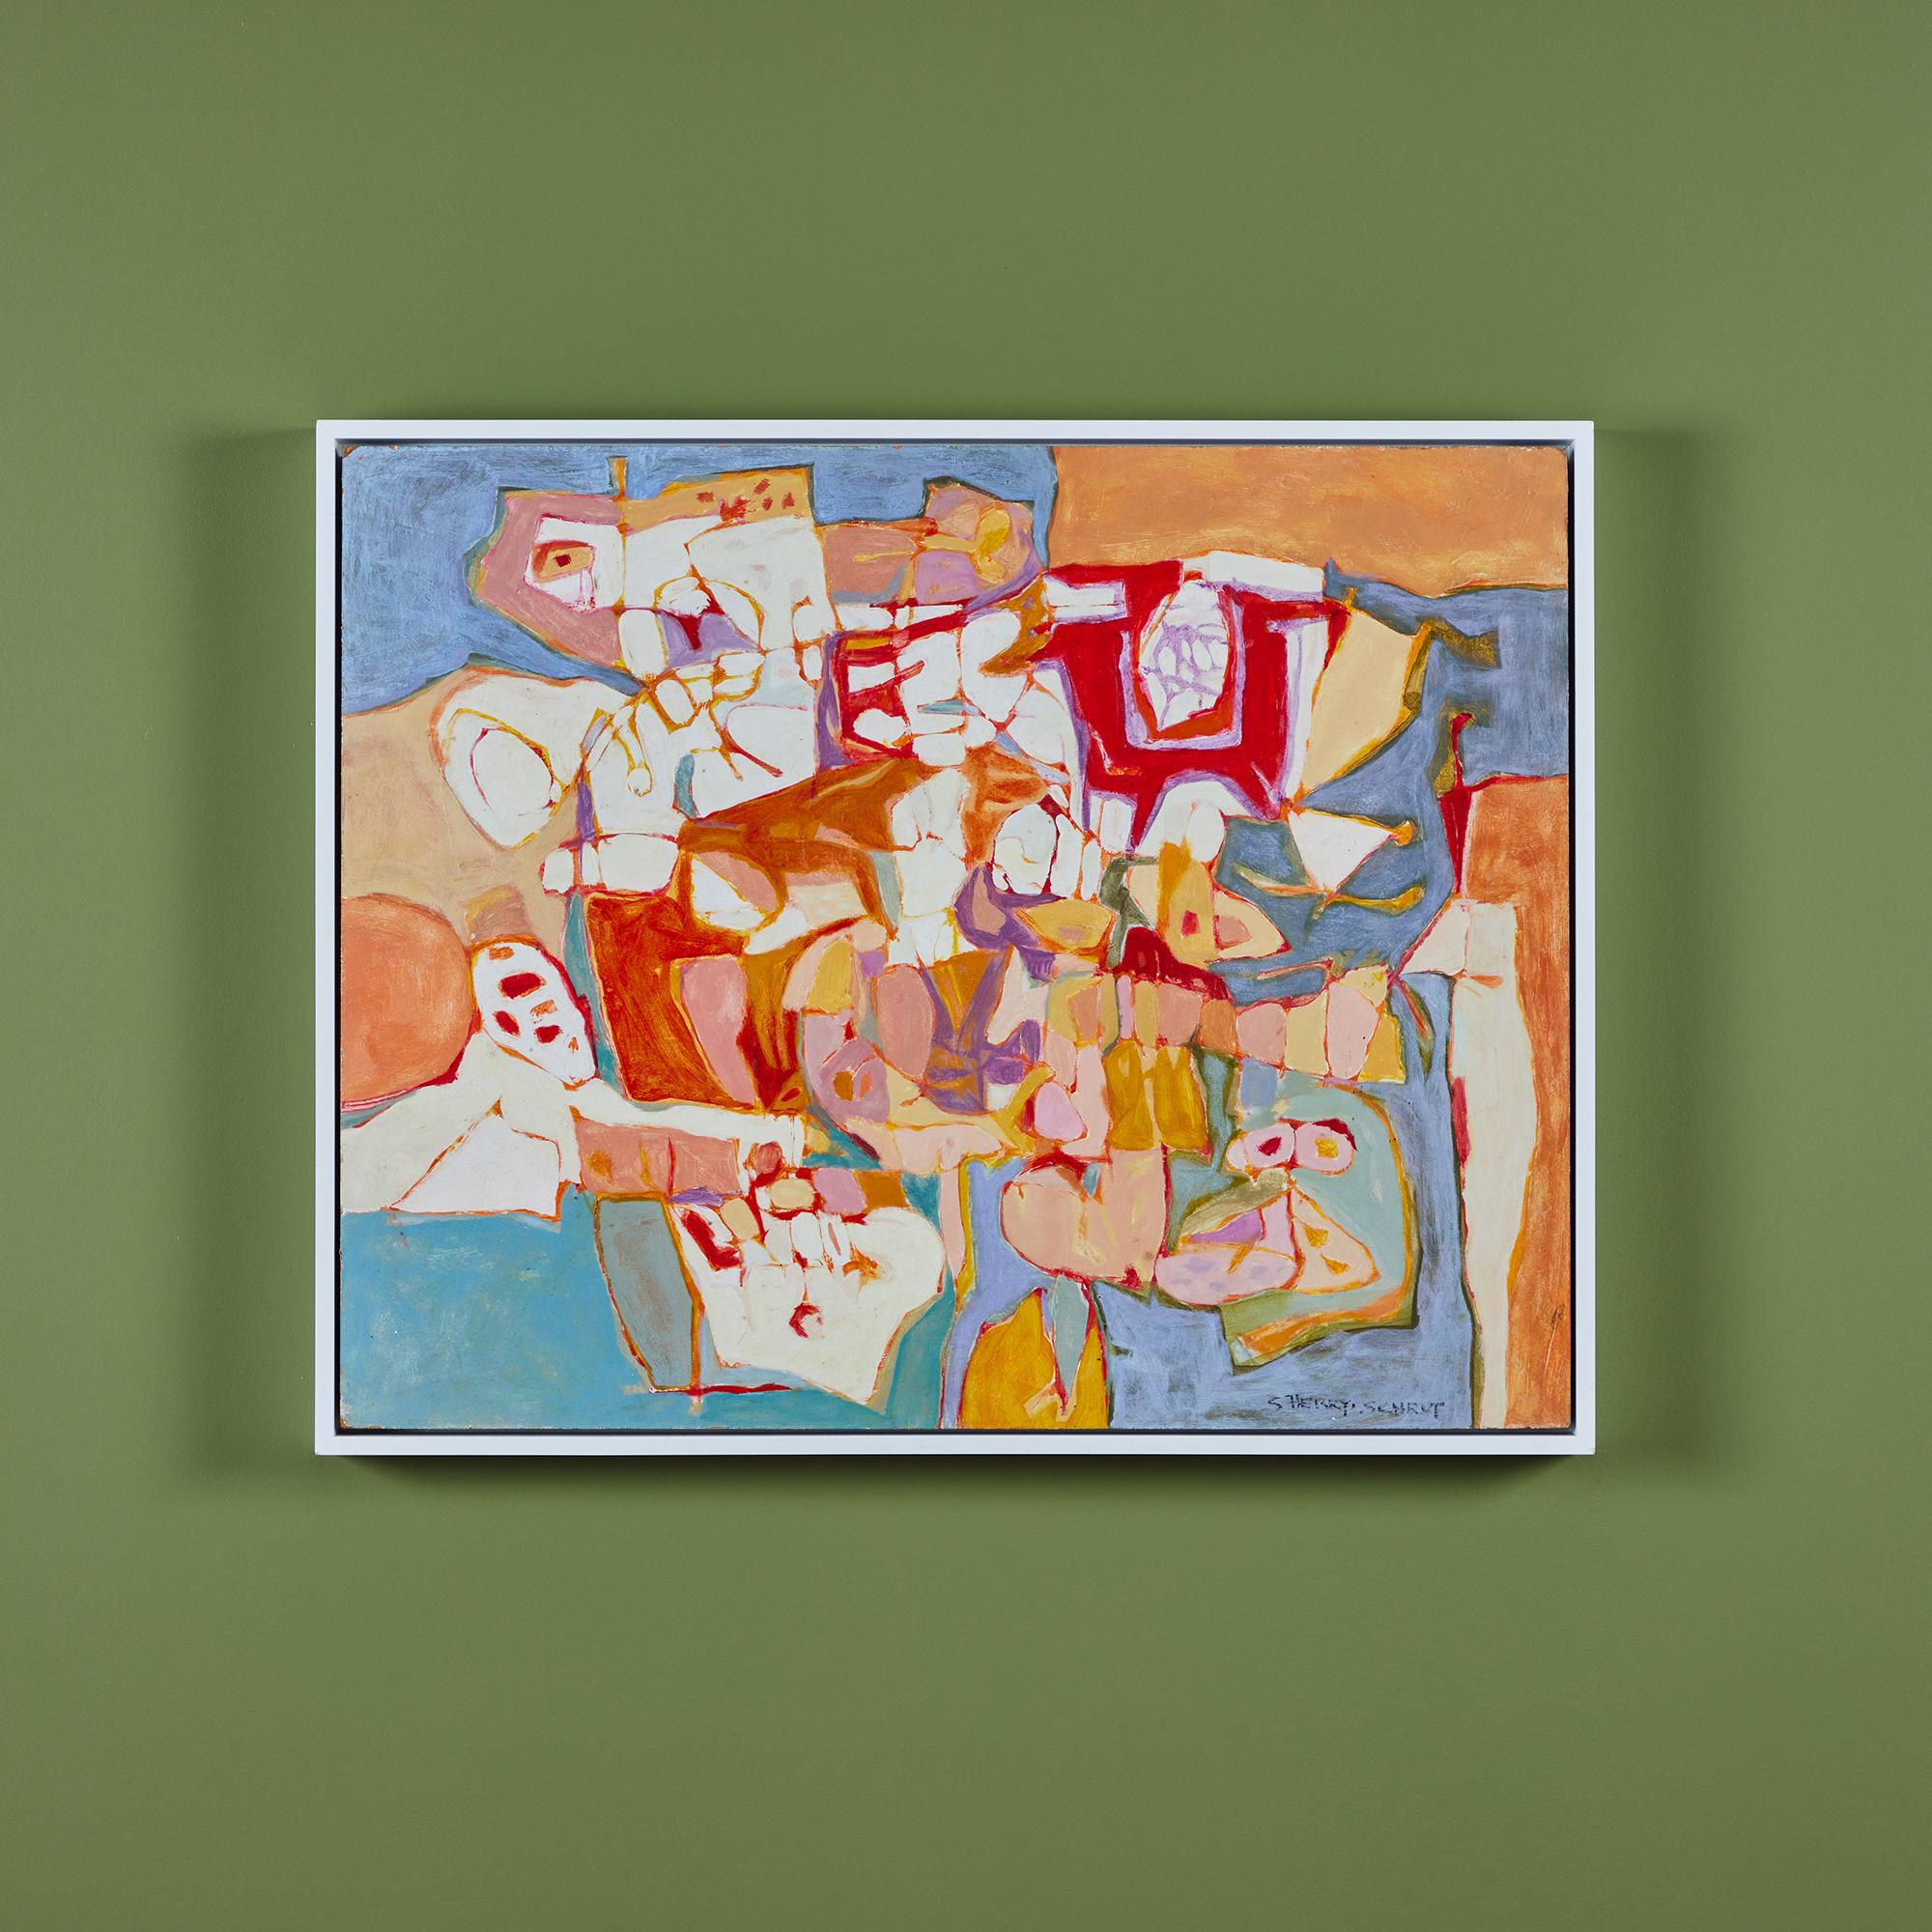 Peinture à l'huile sur toile encadrée de l'artiste de Los Angeles, Sherry Schrut. Les couleurs vont du rouge vif et de l'orange aux bleus et verts froids. Signé par l'artiste.

Dimensions
31,25